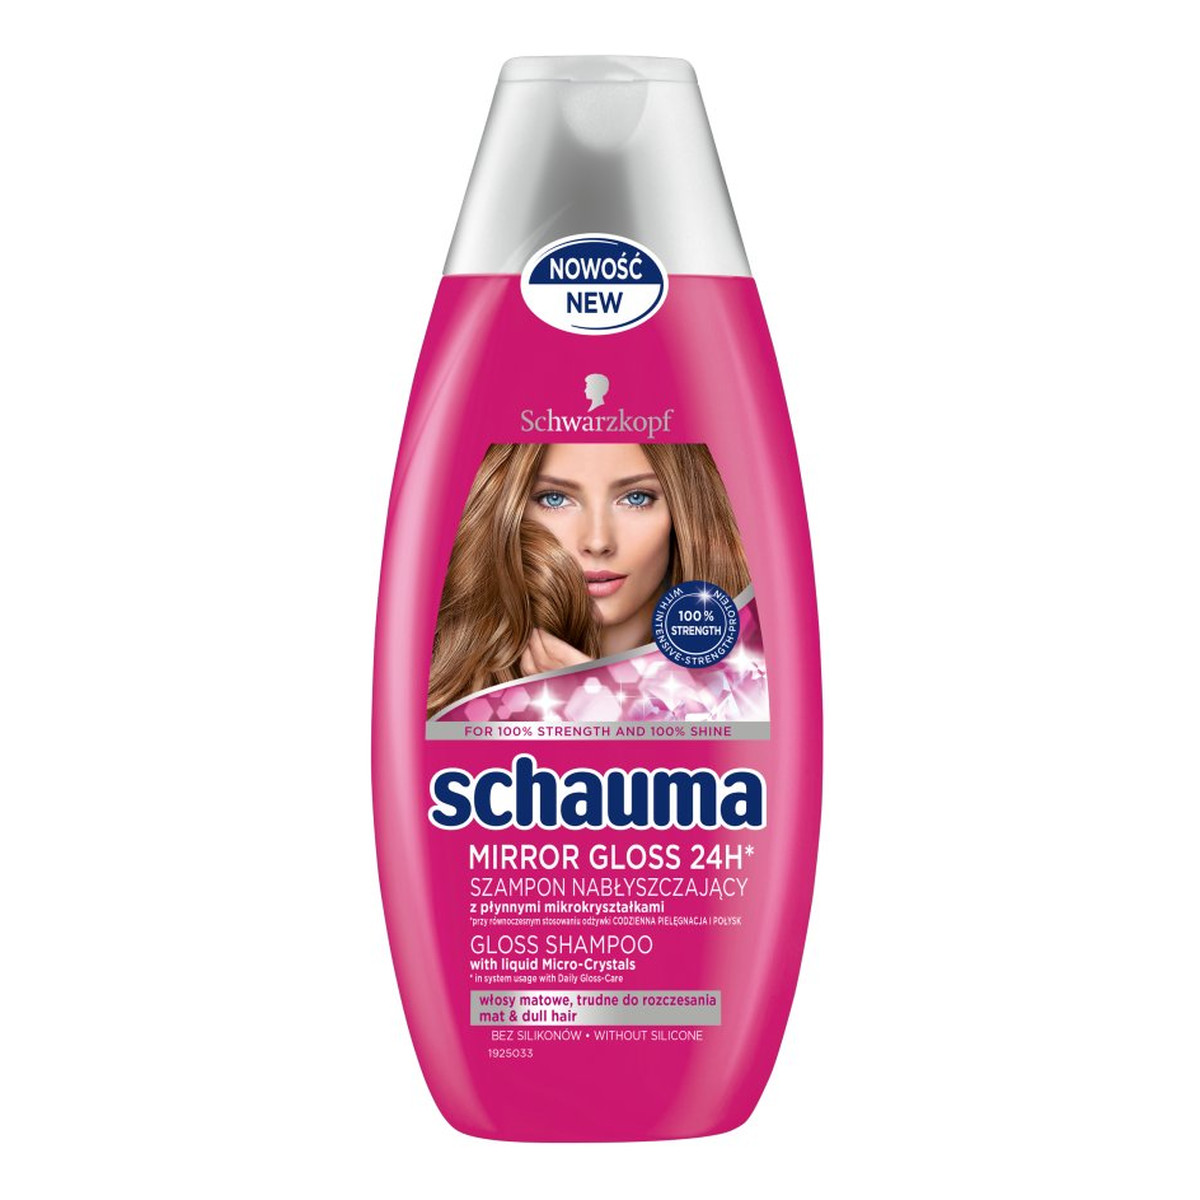 Schauma Mirror Gloss 24H szampon do włosów nabłyszczający 400ml